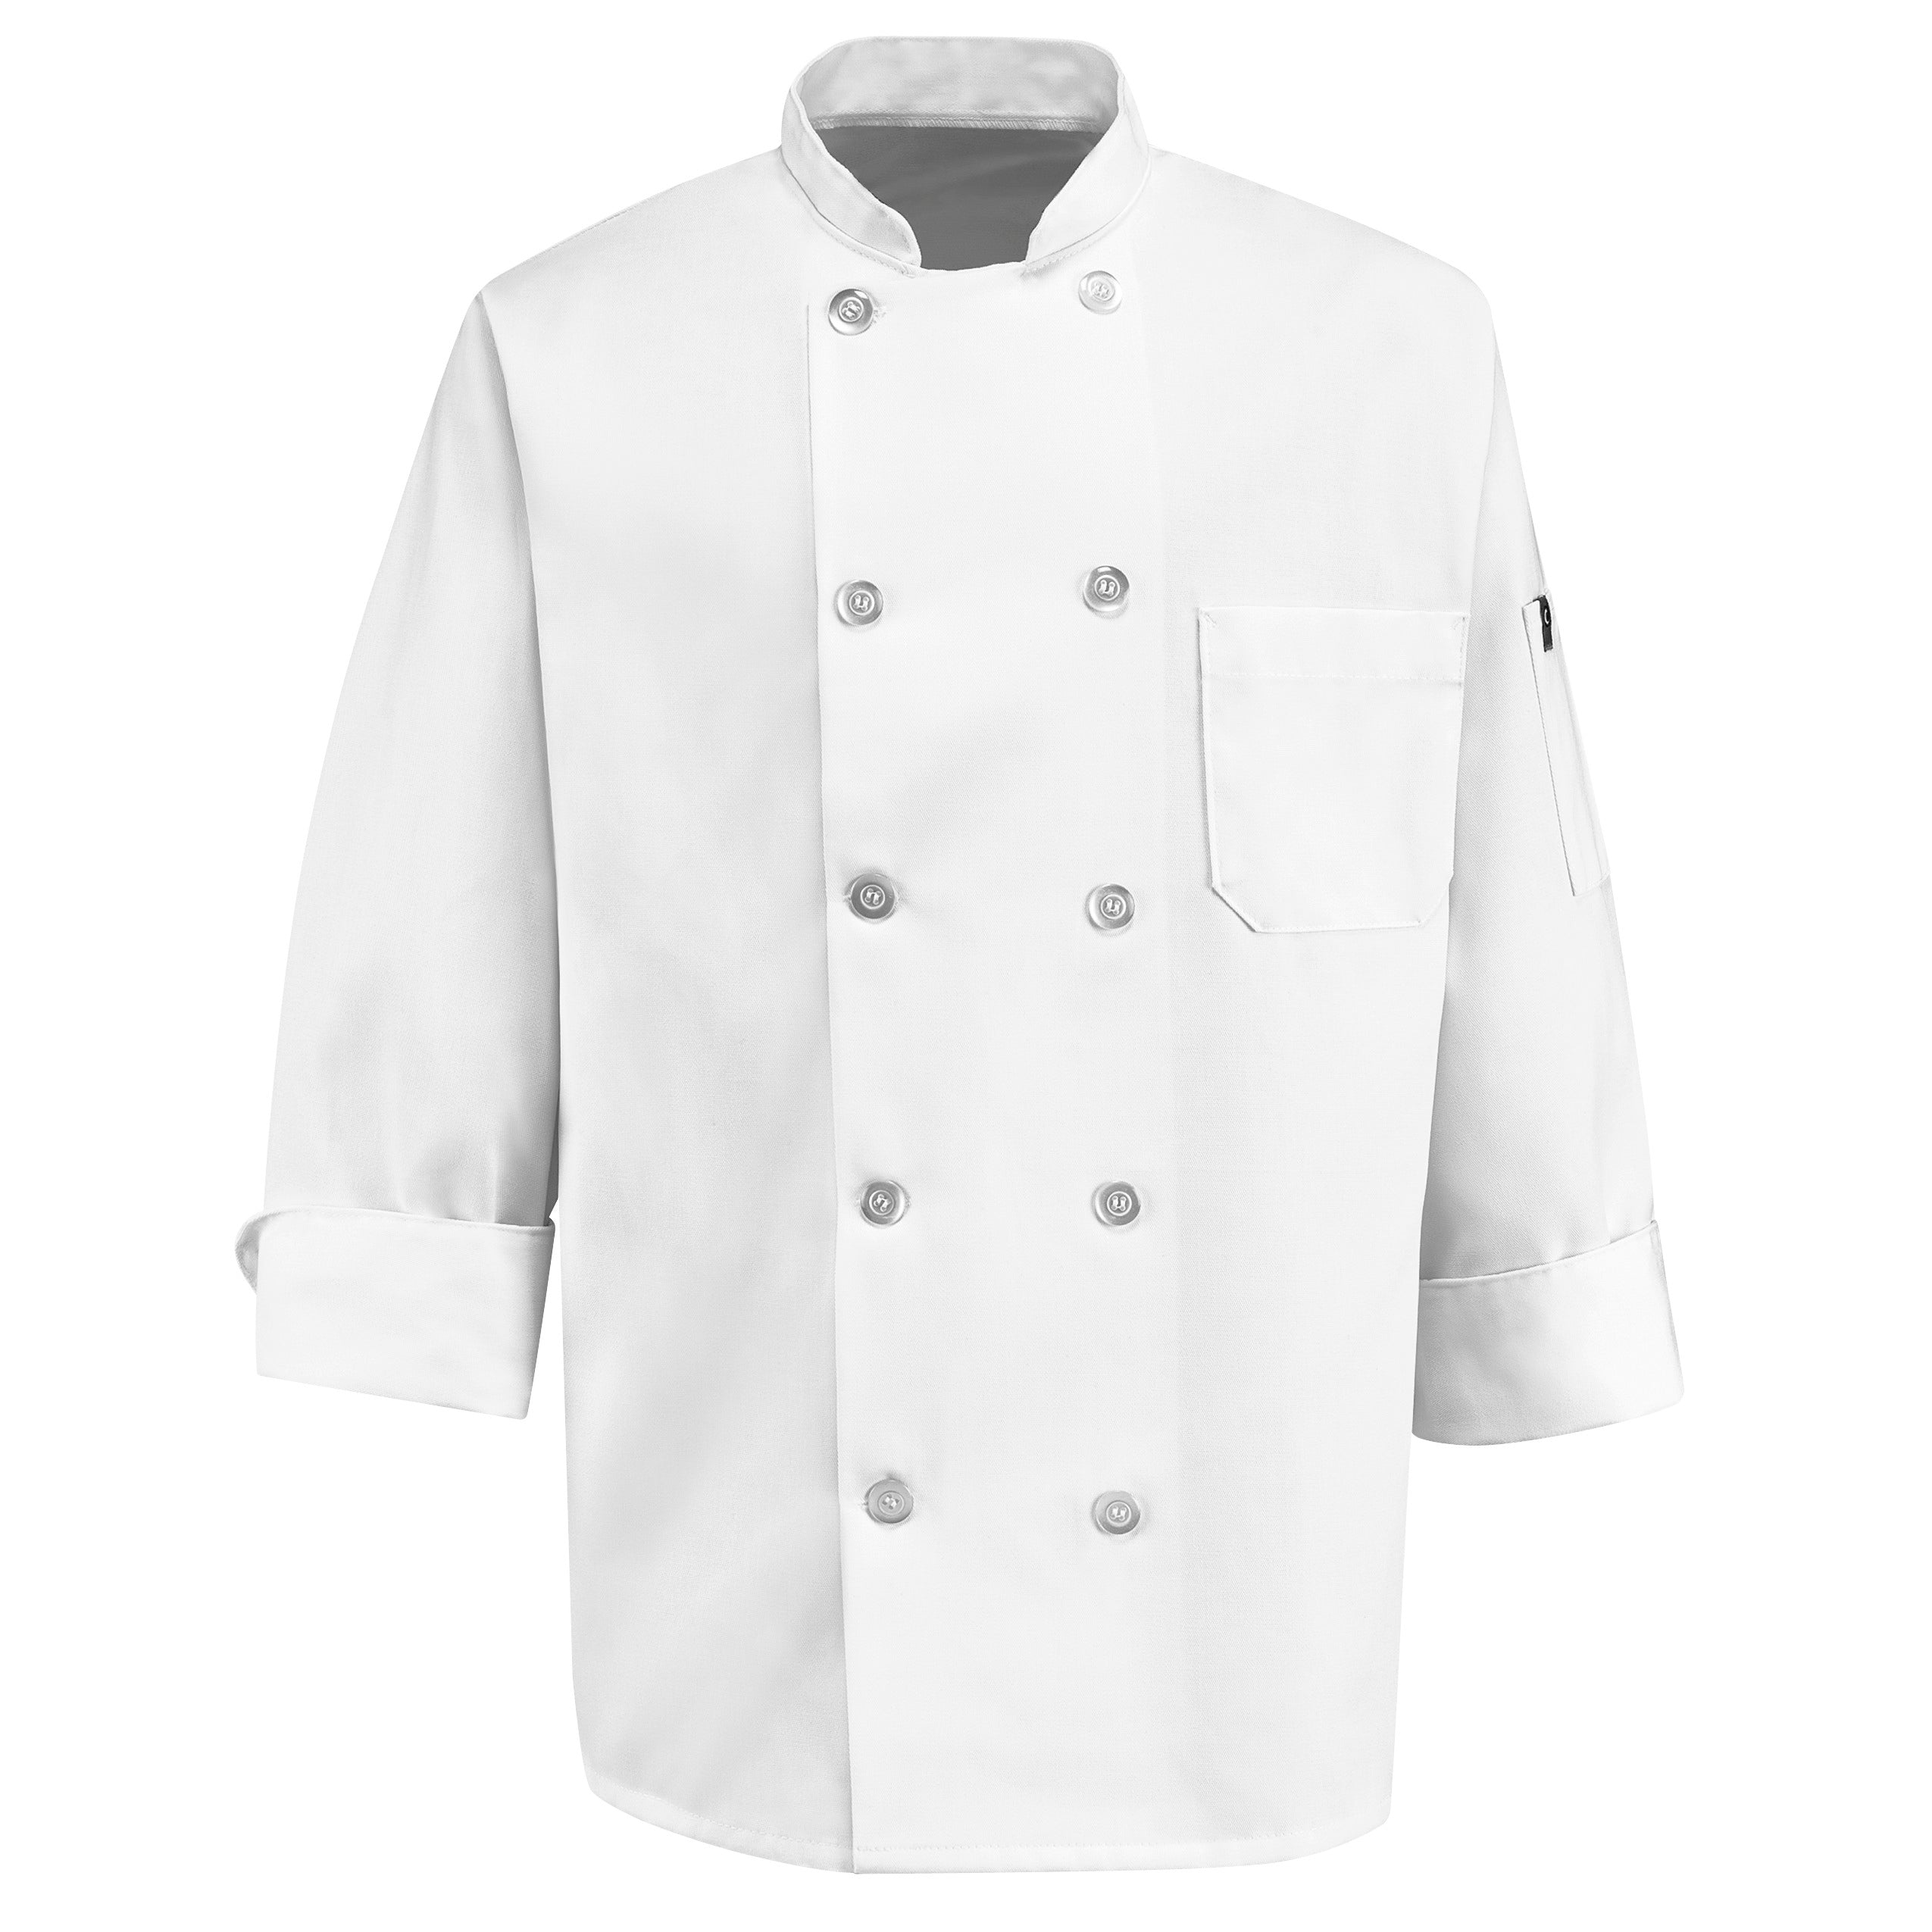 Ten Pearl Button Chef Coat 0415 - White